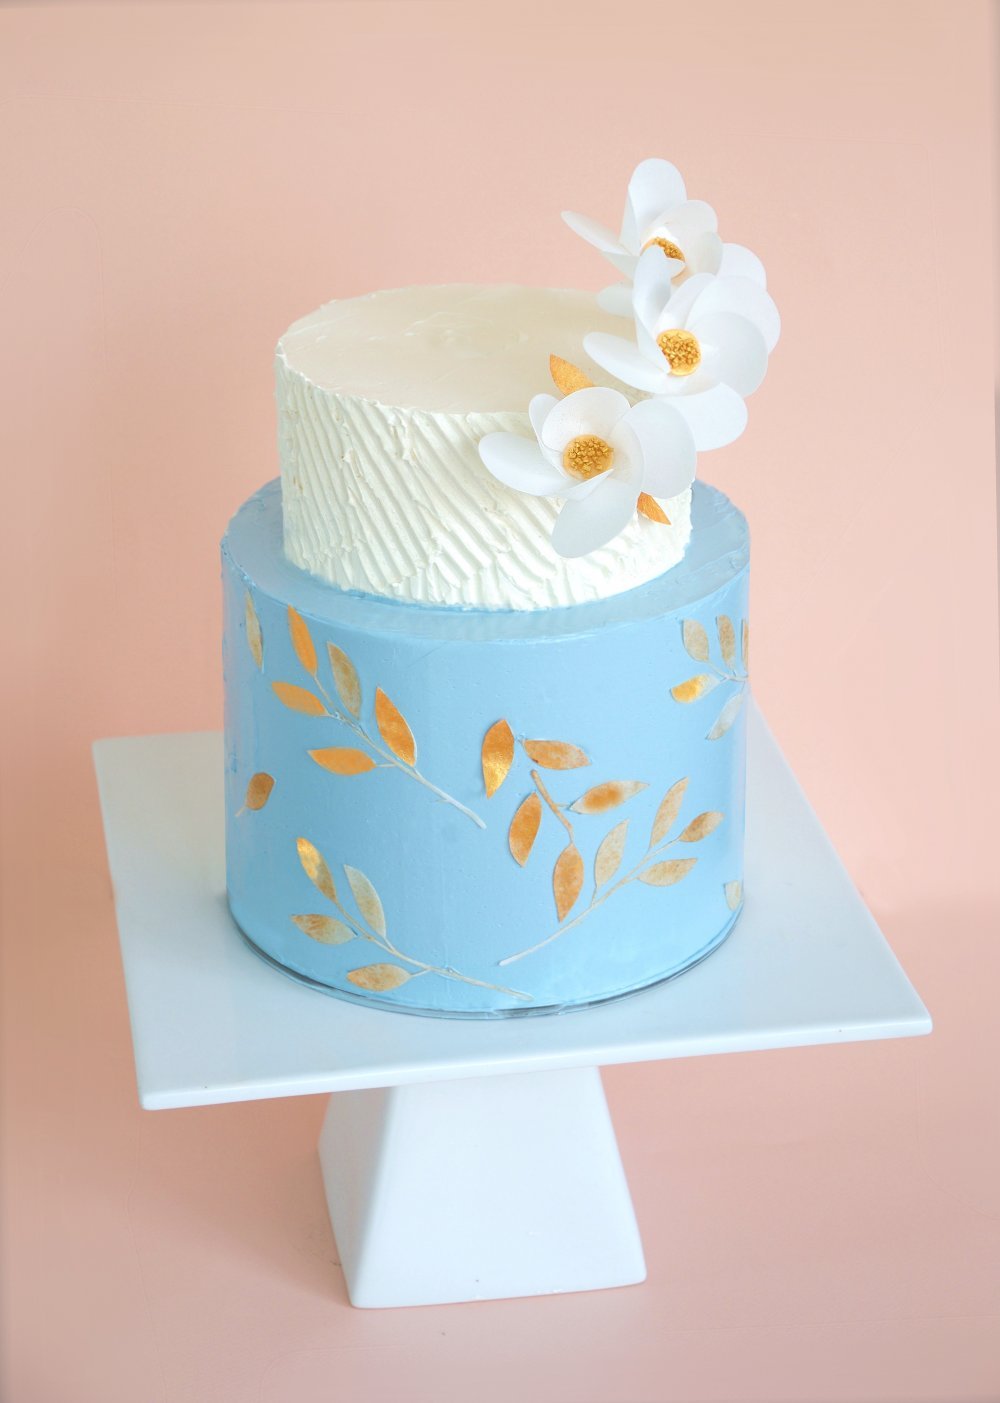 Нежный торт с кремовым покрытием и вафельными цветами. От 1350 руб/кг